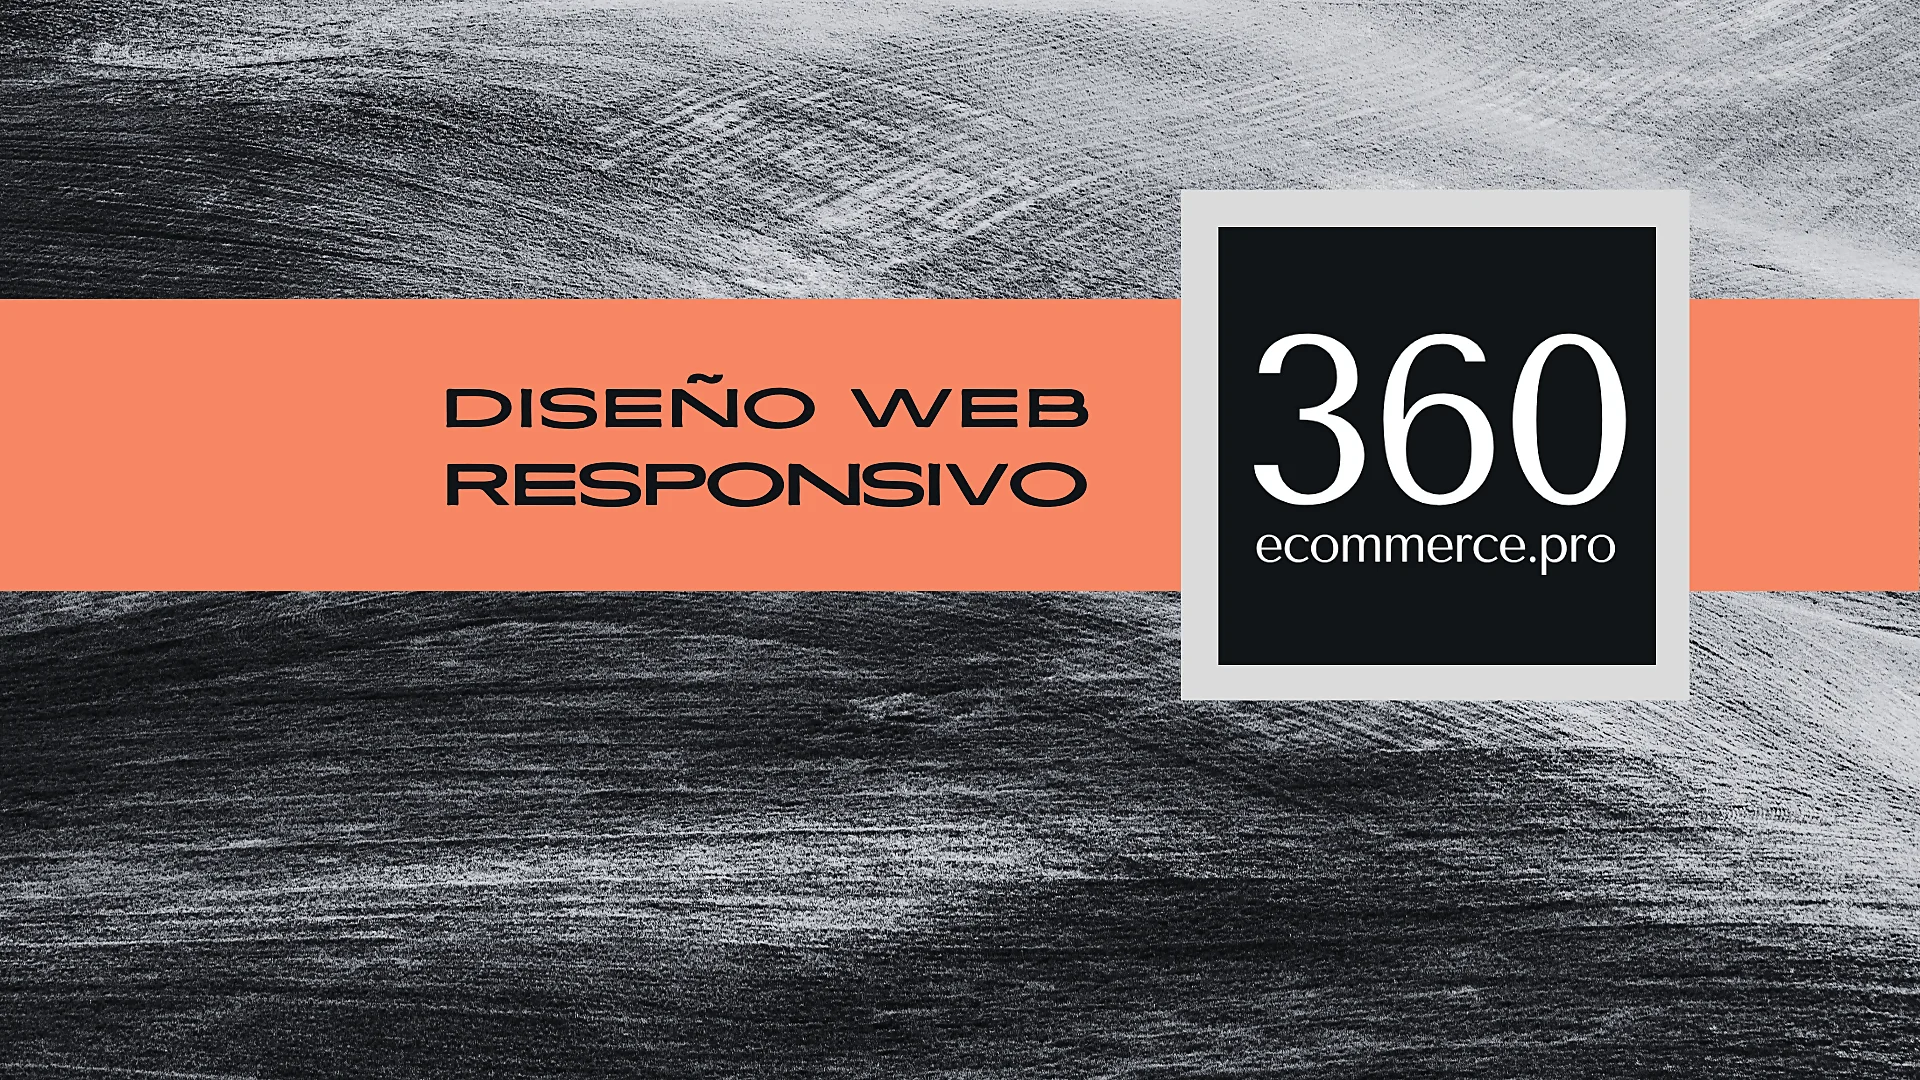 Banner promocional con la leyenda 'DISEÑO WEB RESPONSIVO' en una franja naranja y el logo '360 ecommerce.pro' destacando la importancia del SEO para galerías de Arte.